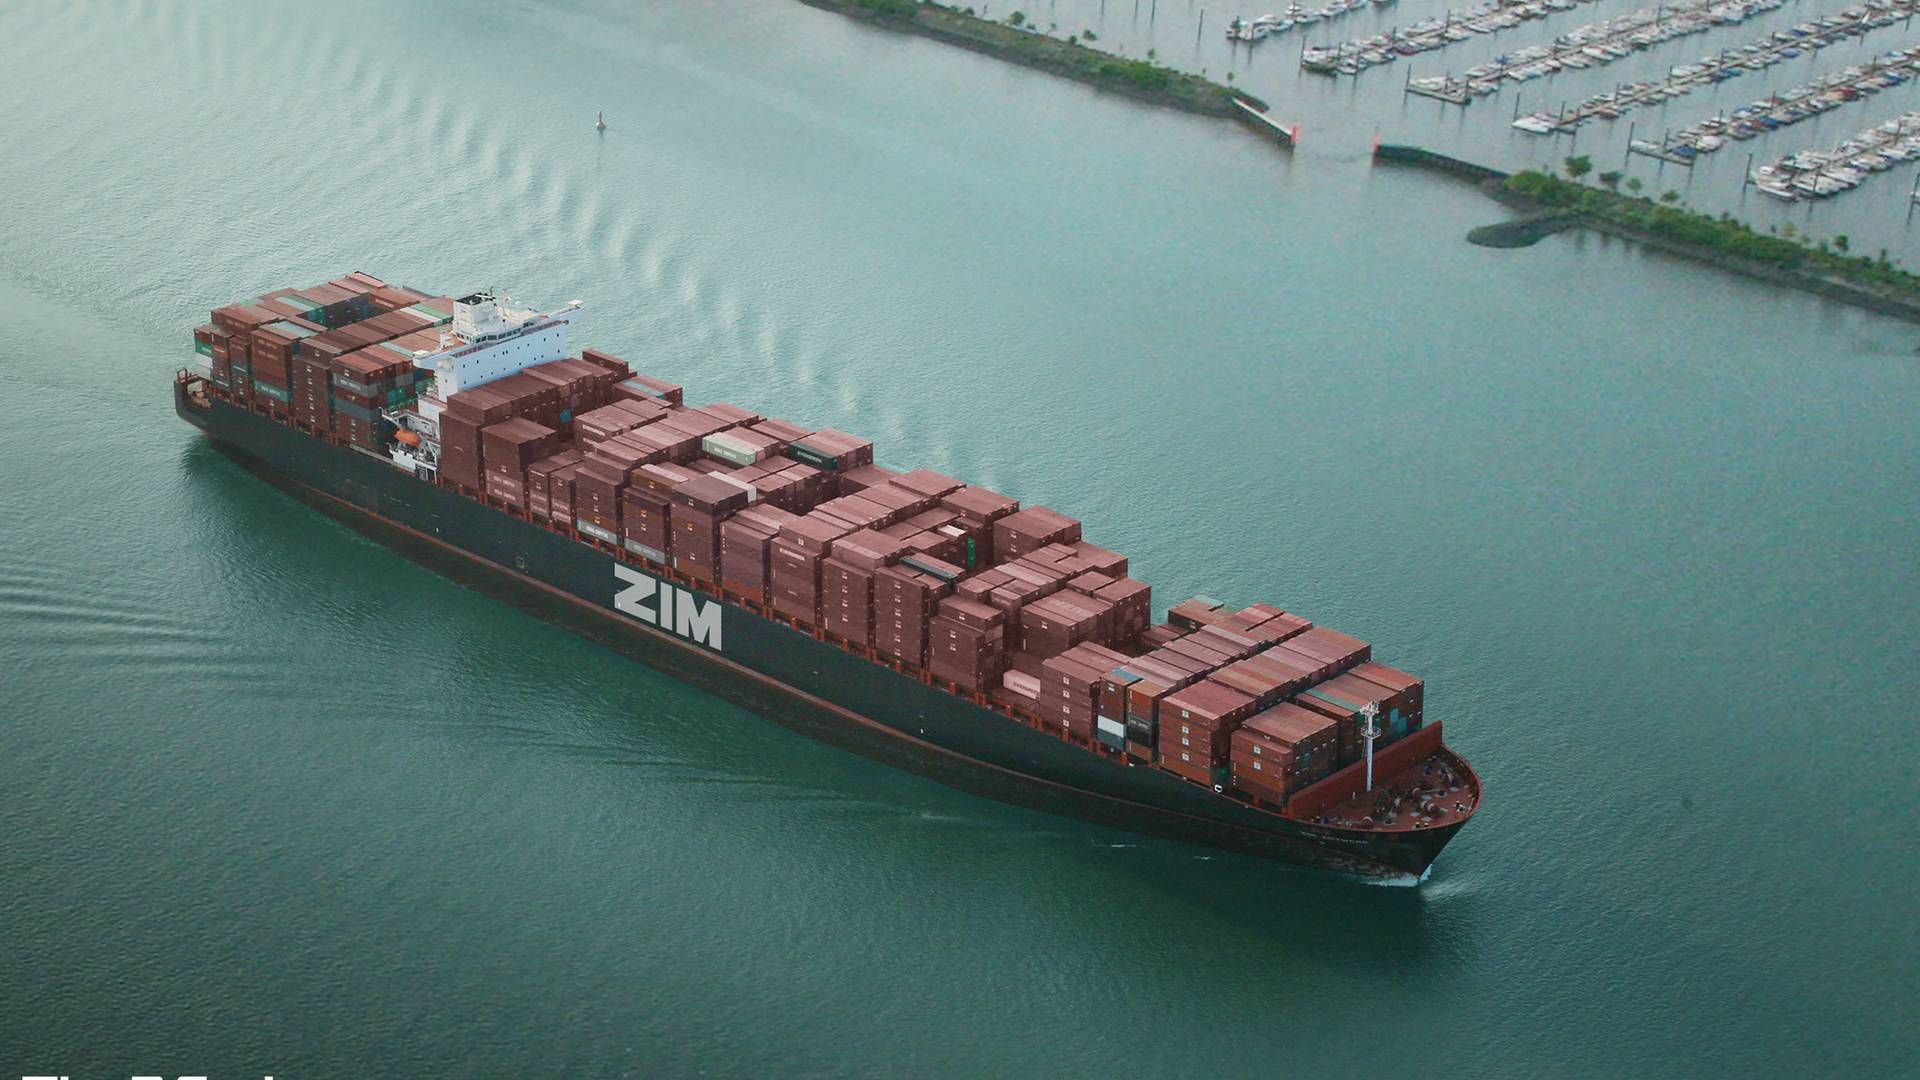 Zim undgår Det Arabiske Hav og Det Røde Hav efter trusler mod sikker transit, oplyser de i en opdatering. | Foto: Zim Integrated Shipping Services